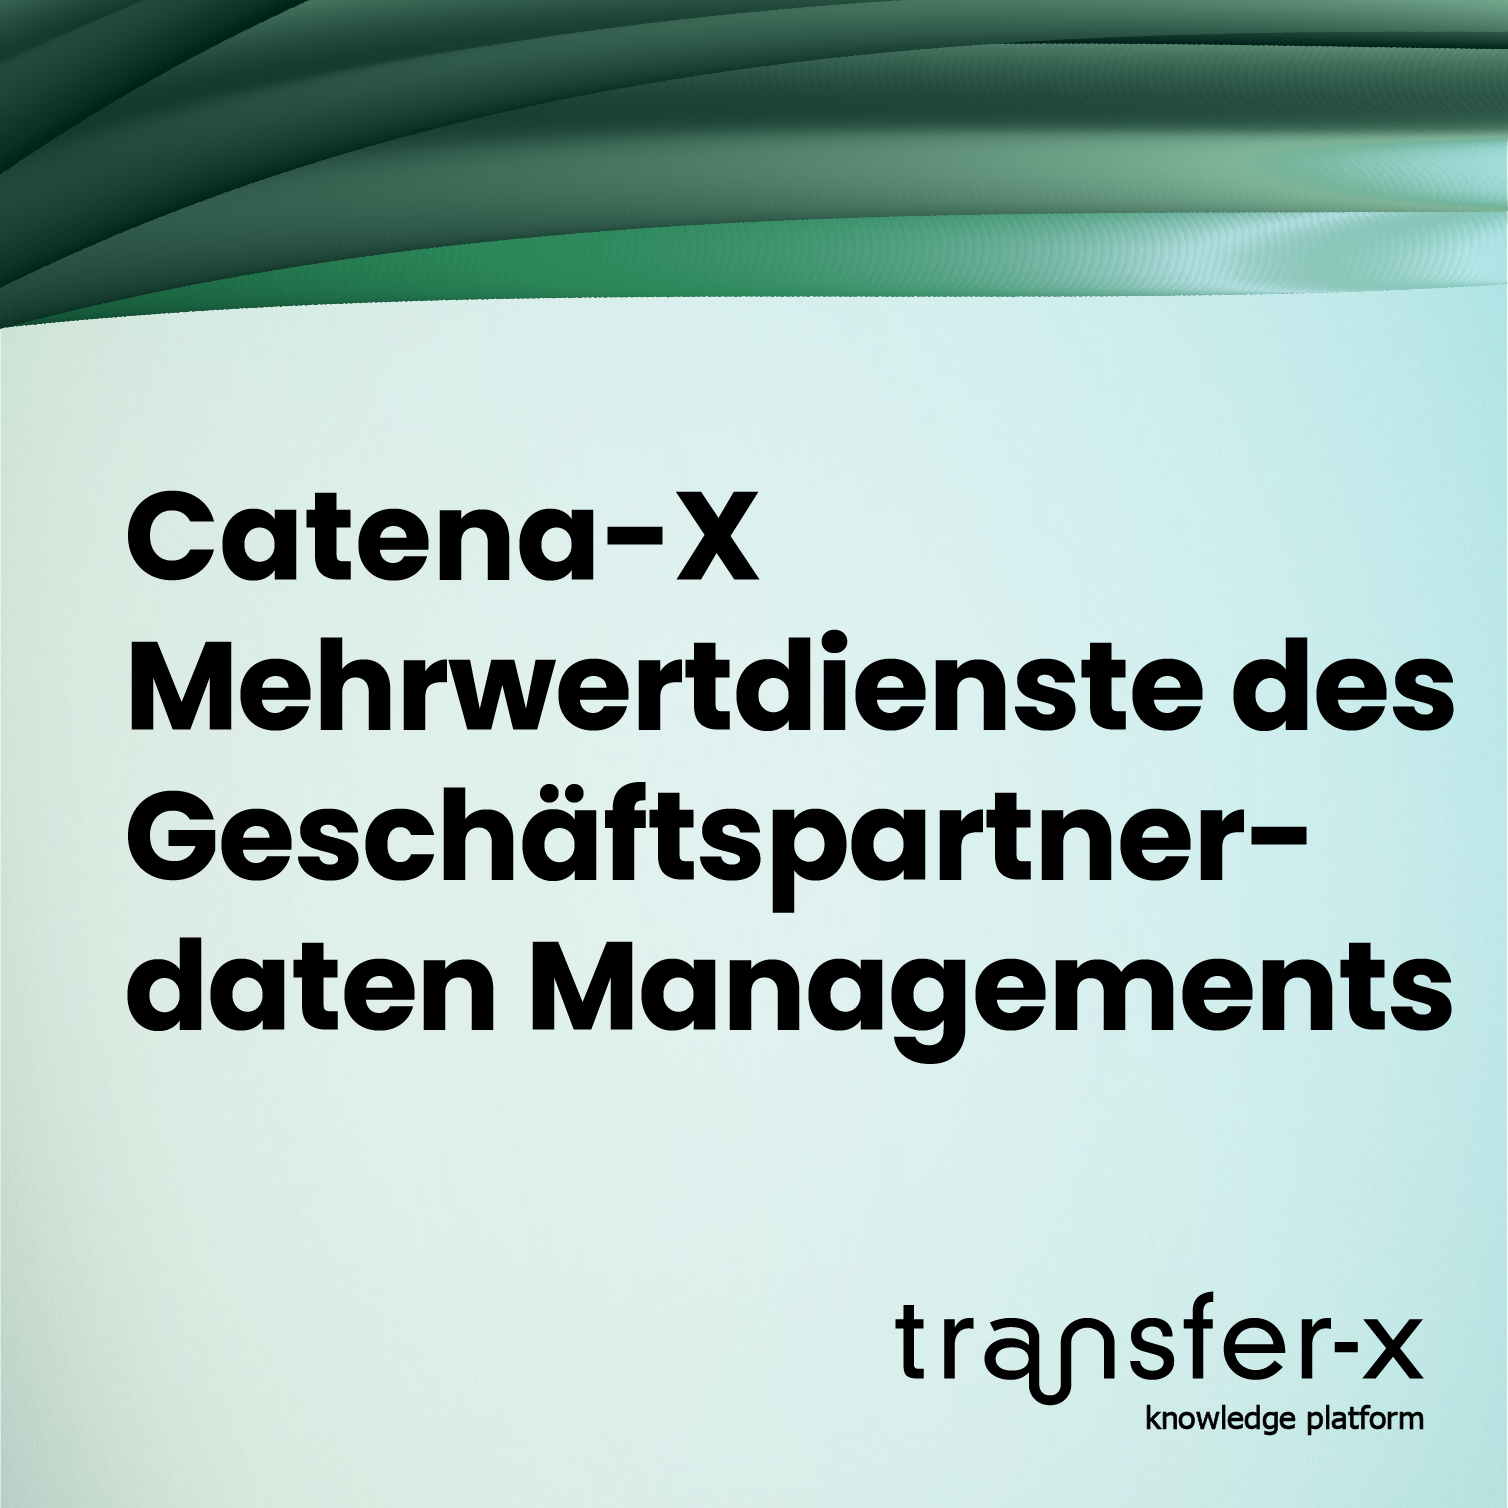 Öffnen Catena-X: Mehrwertdienste des Geschäftspartnerdaten Managements
